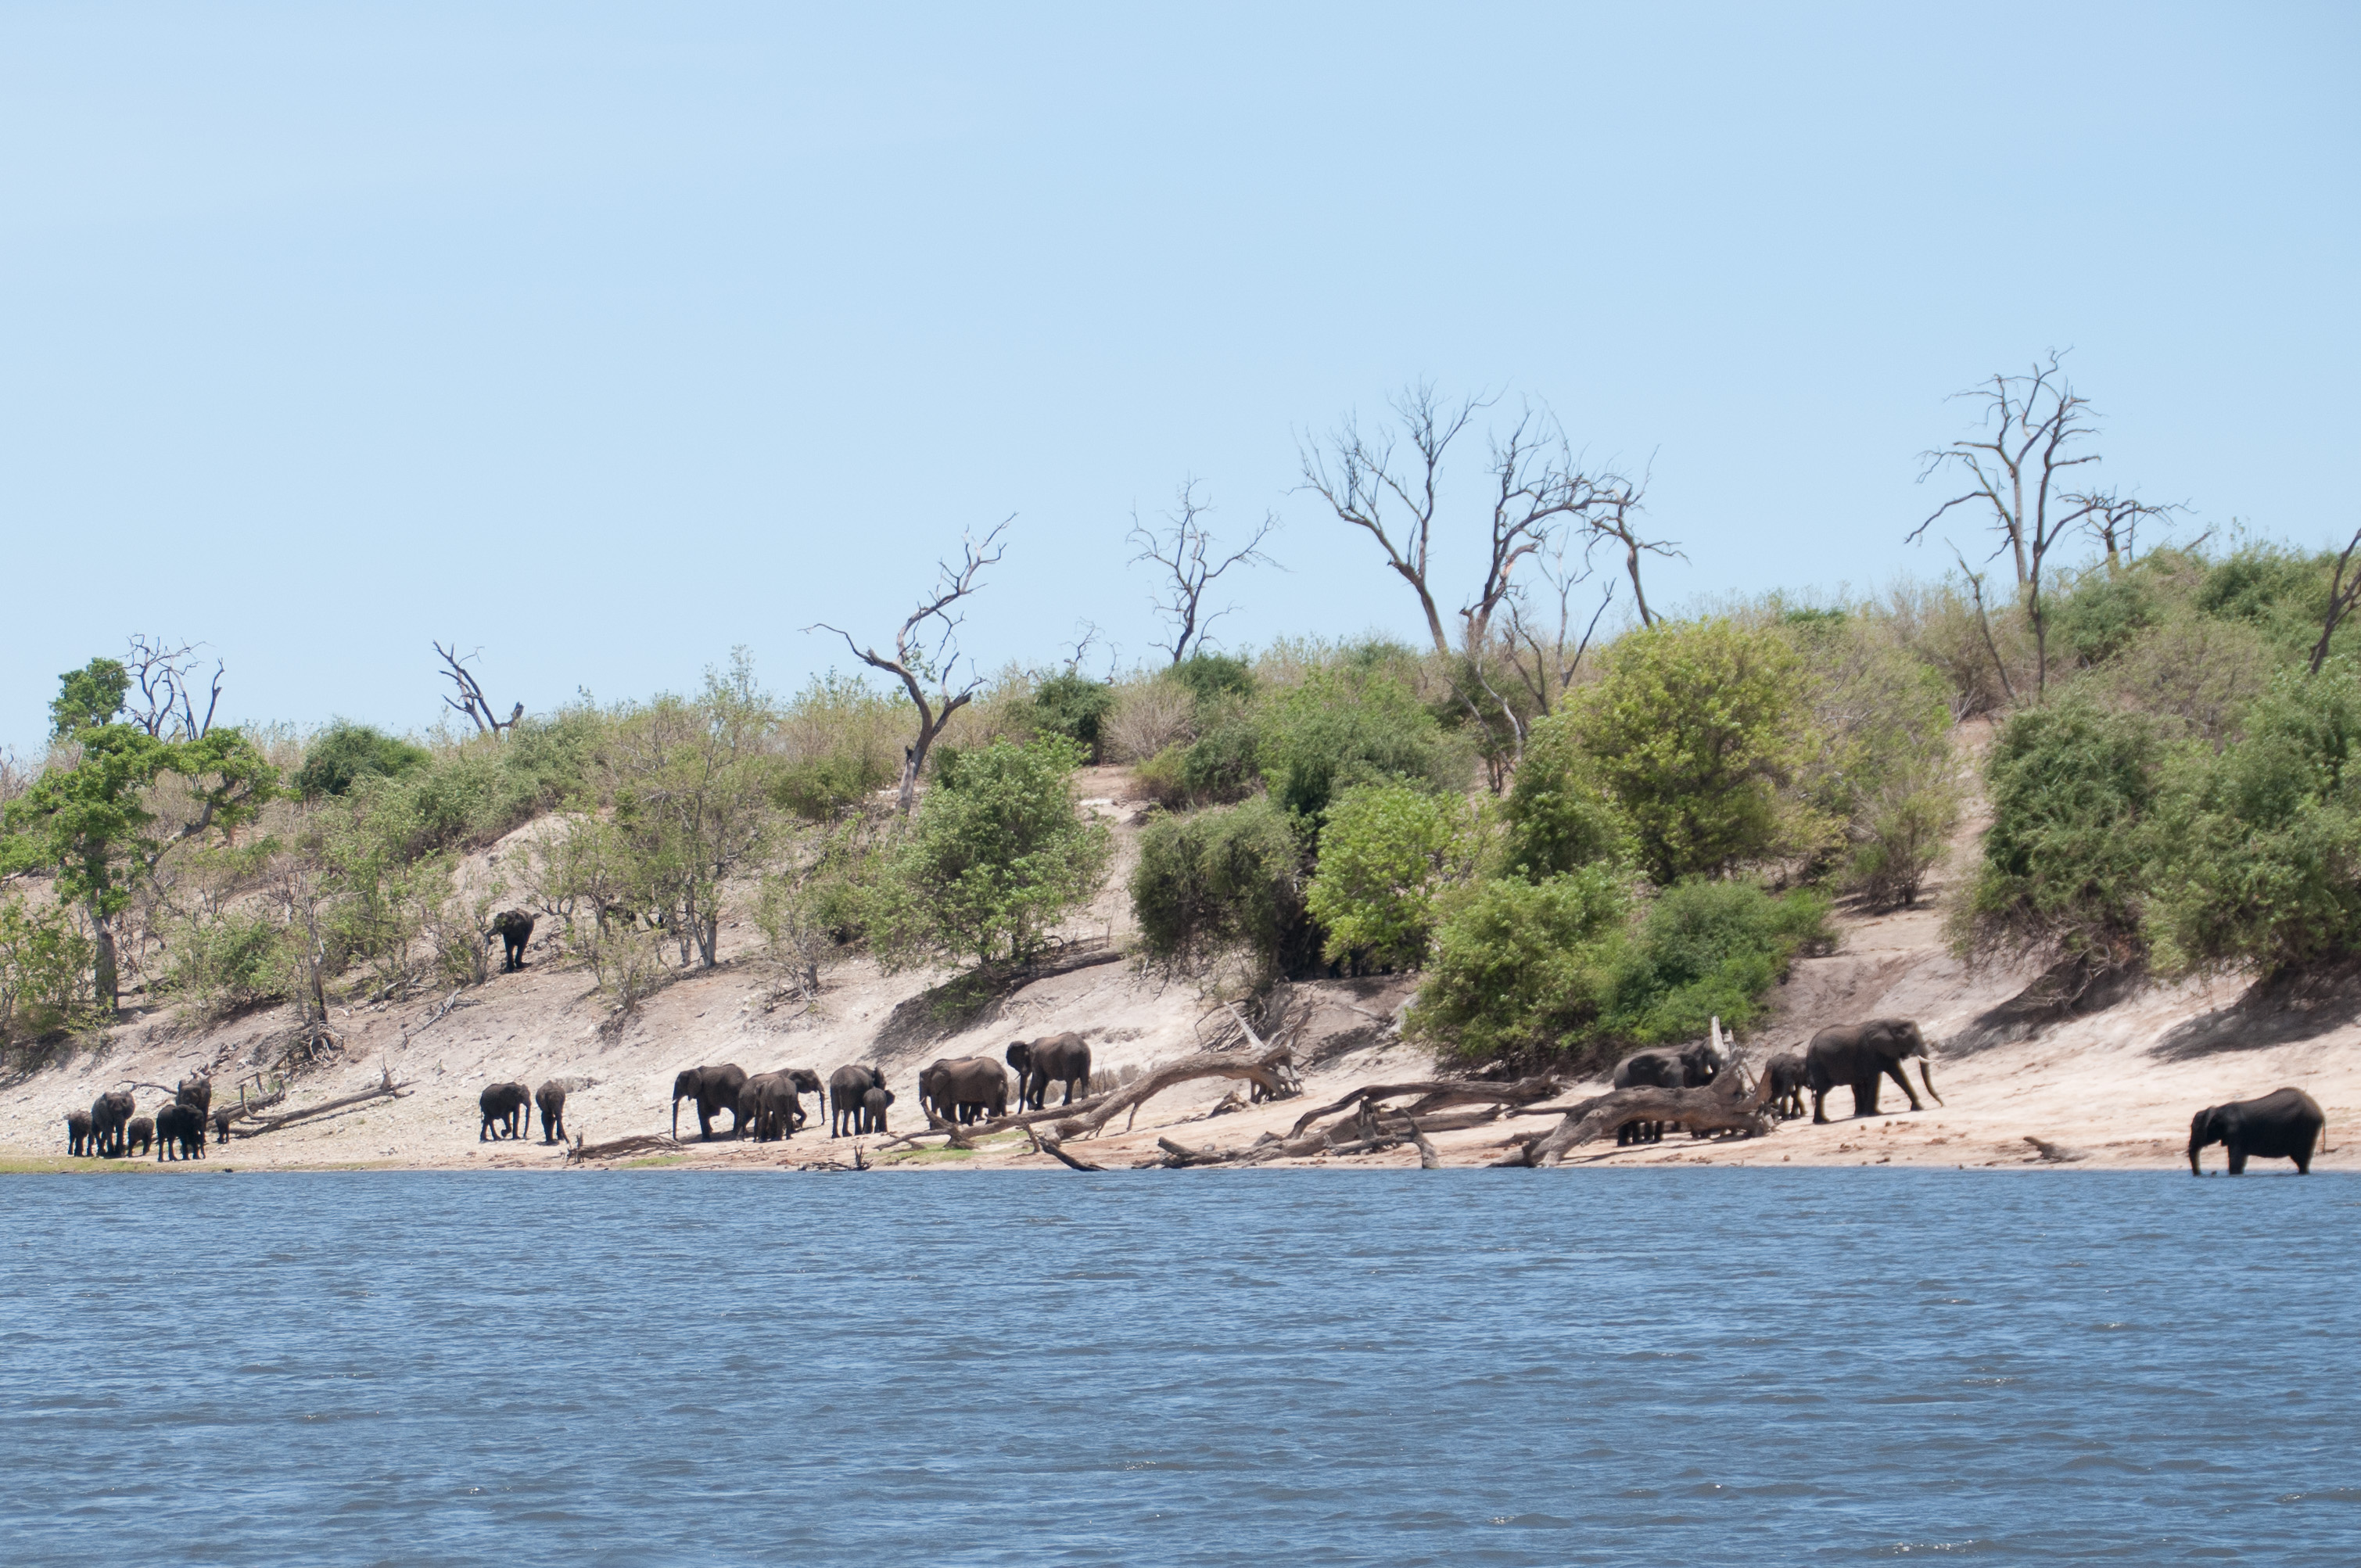 Eléphants de savane (Bush elephants, Loxondota africana) descendant boire dans la rivière Chobe à mi-journée, Chobe National Park, Botswana.